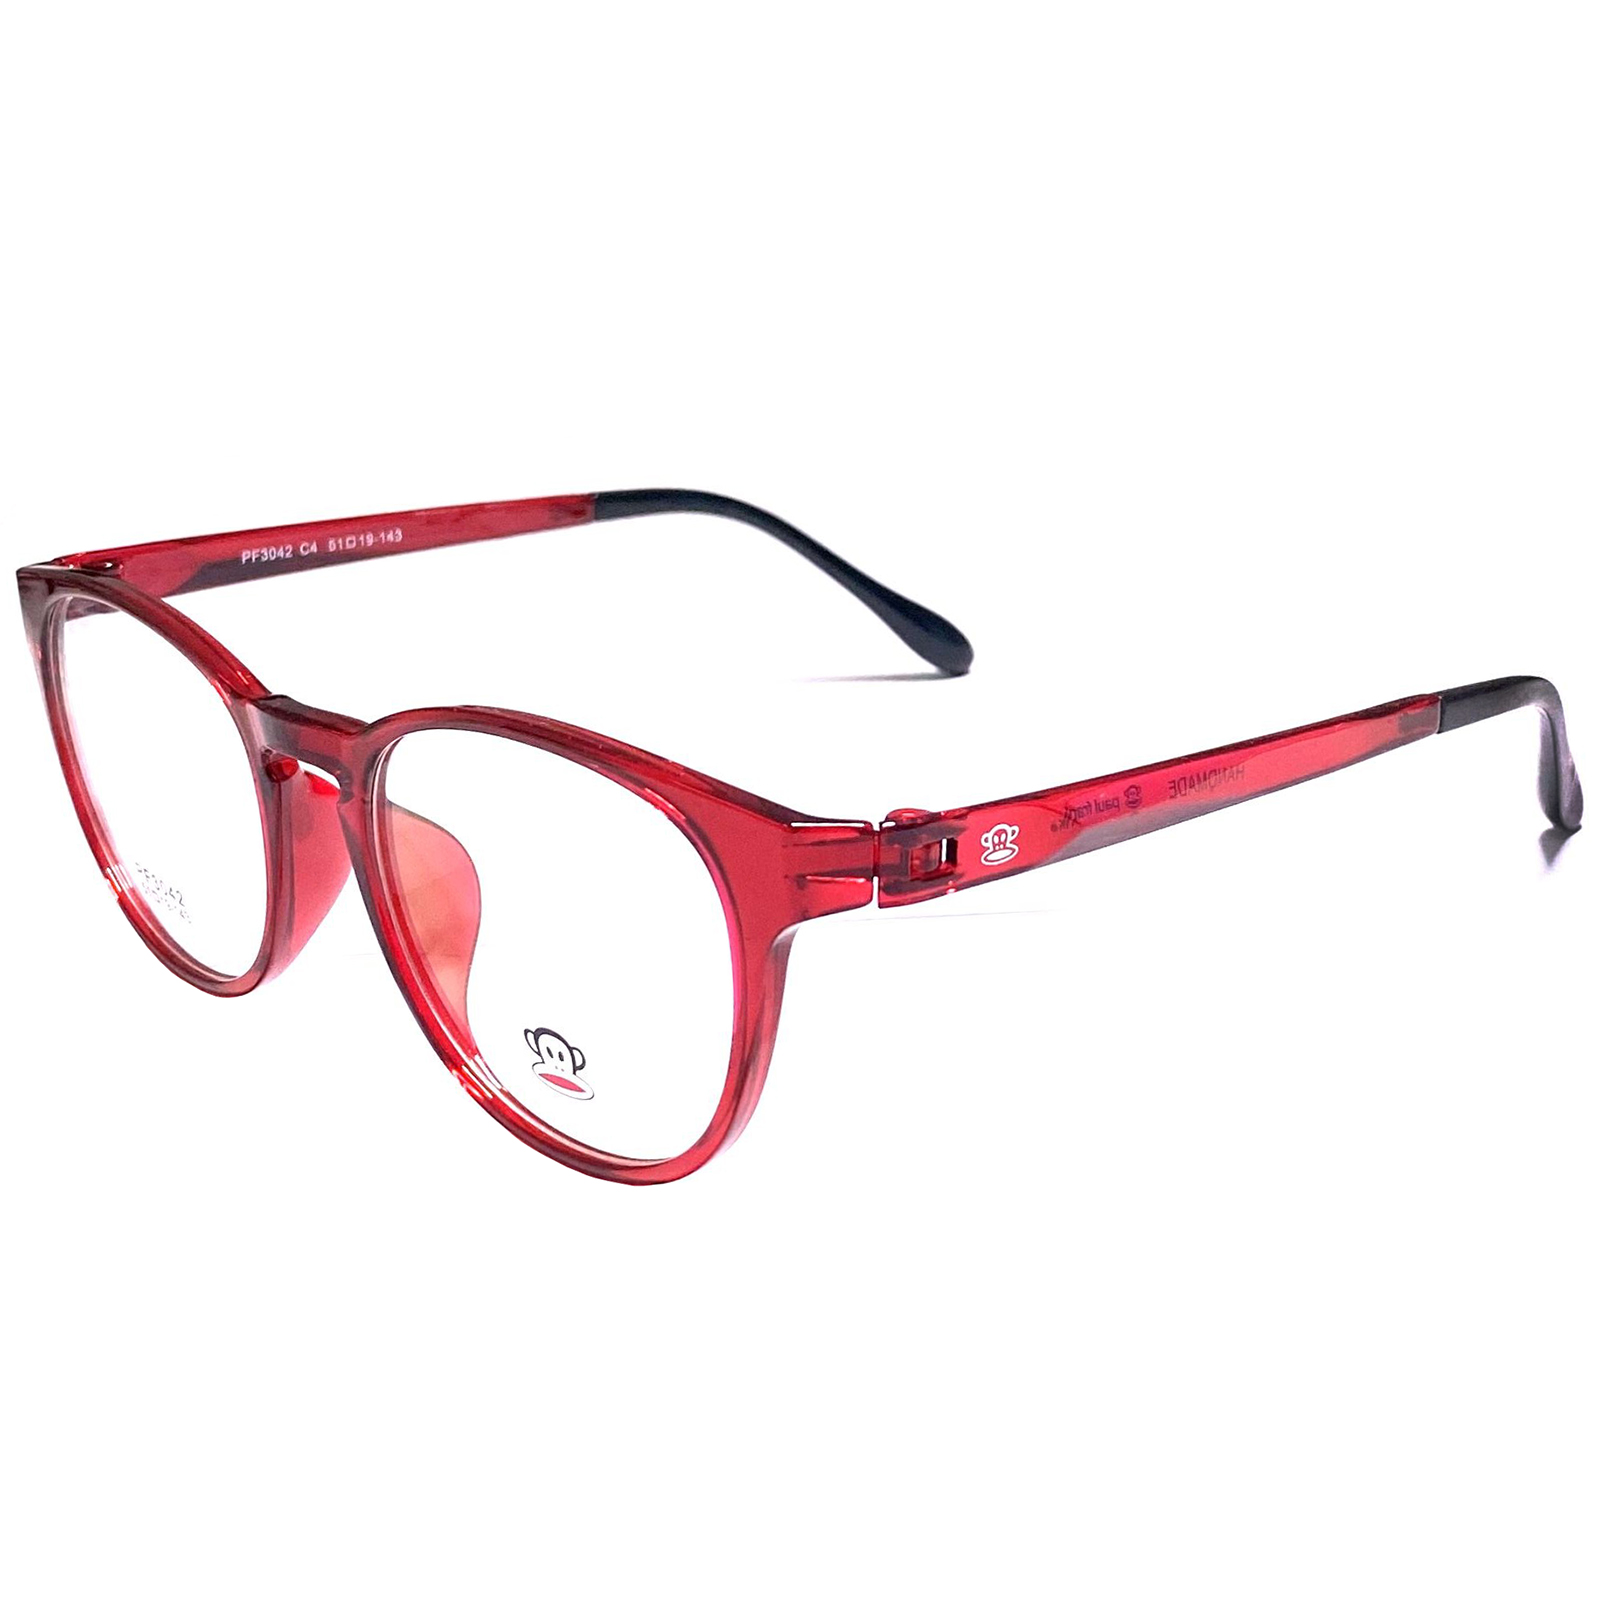 กรอบแว่นตา สำหรับตัดเลนส์ แว่นตาชาย หญิง Fashion รุ่น Paul Frank 3042 สีดำขาเขียว กรอบเต็ม Rectangle ทรงรี ขาข้อต่อ วัสดุ TR 90 รับตัดเลนส์ทุกชนิด